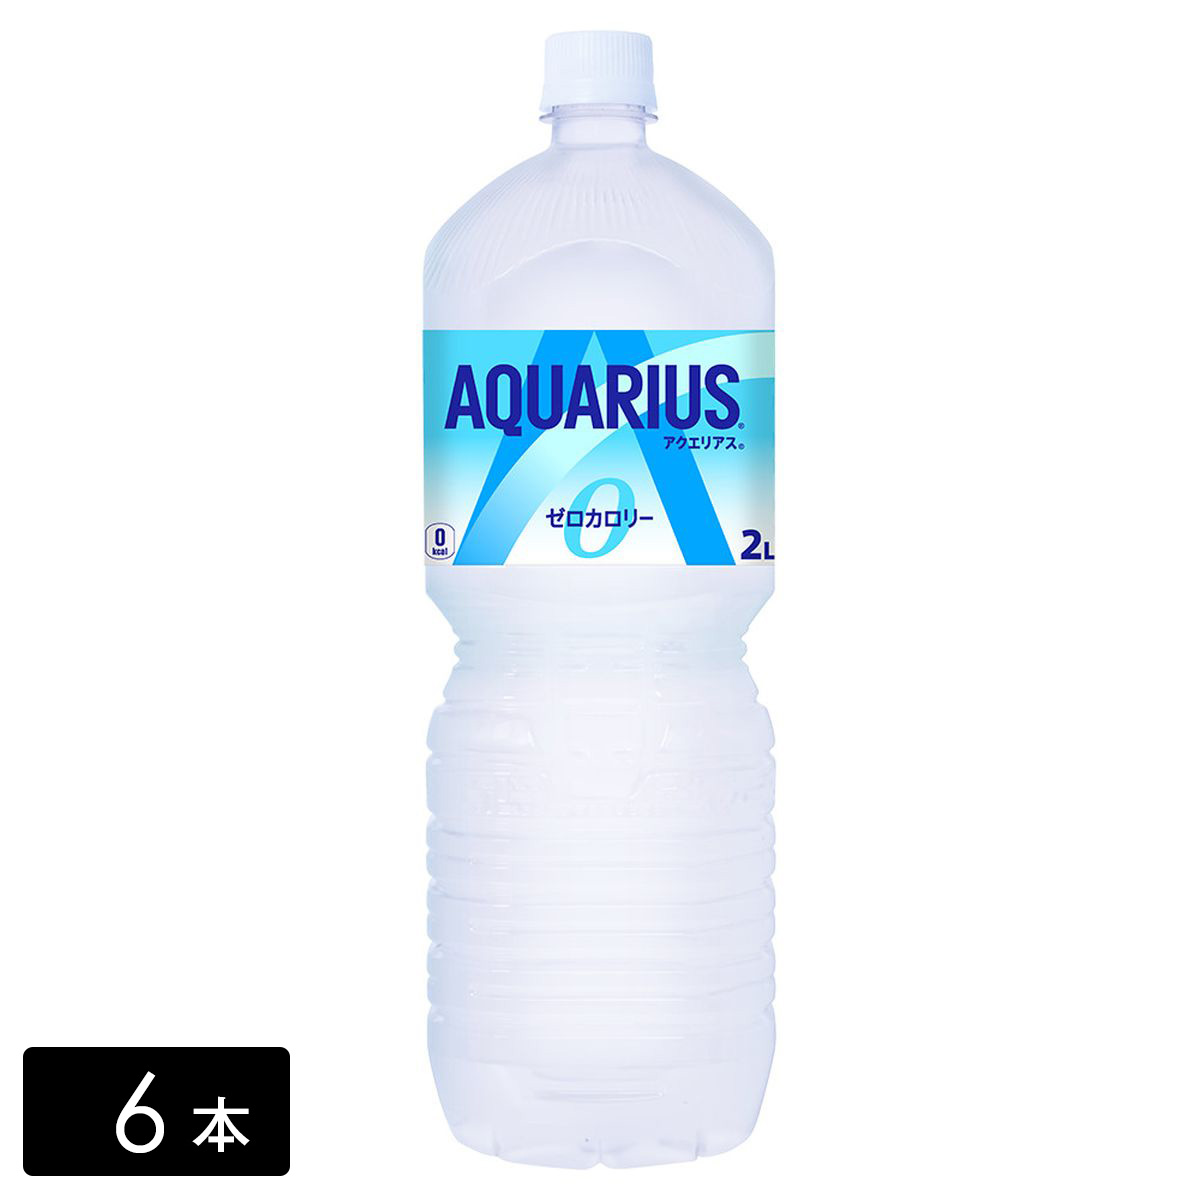 アクエリアス ゼロ スポーツドリンク 2L×6本(1箱) カロリーゼロ 熱中症対策 水分補給 AQUARIUS ペットボトル ケース売り